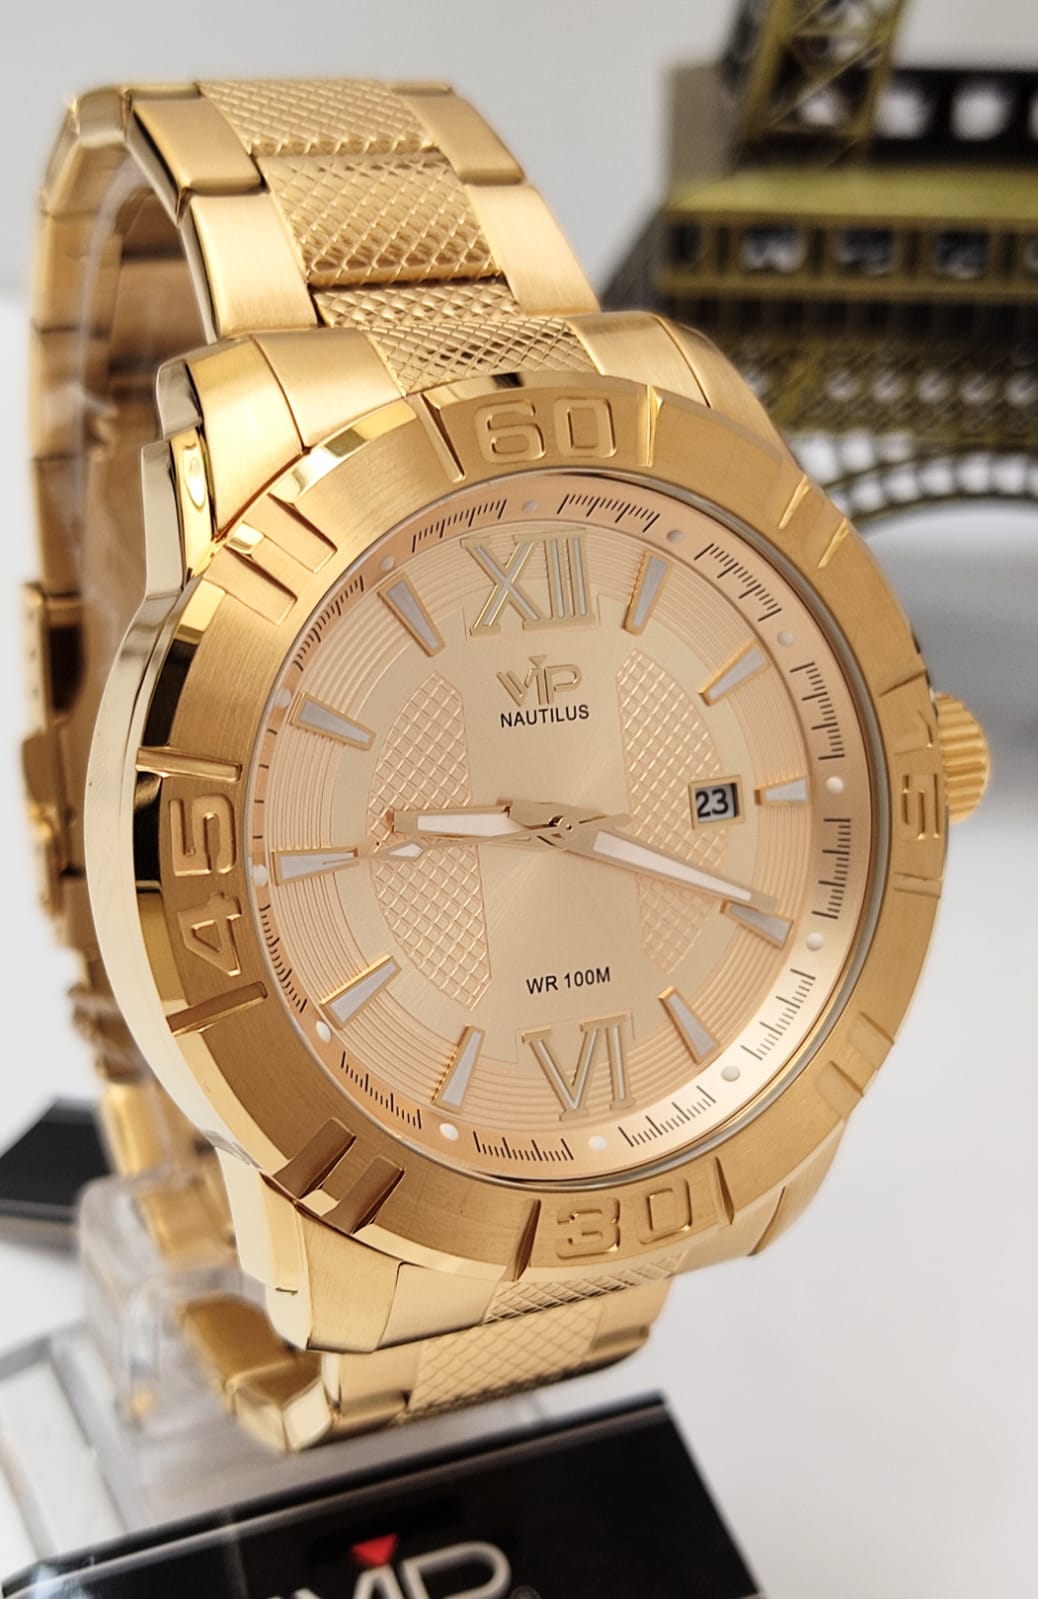 Relógio Banhado a Ouro VIP MH63332